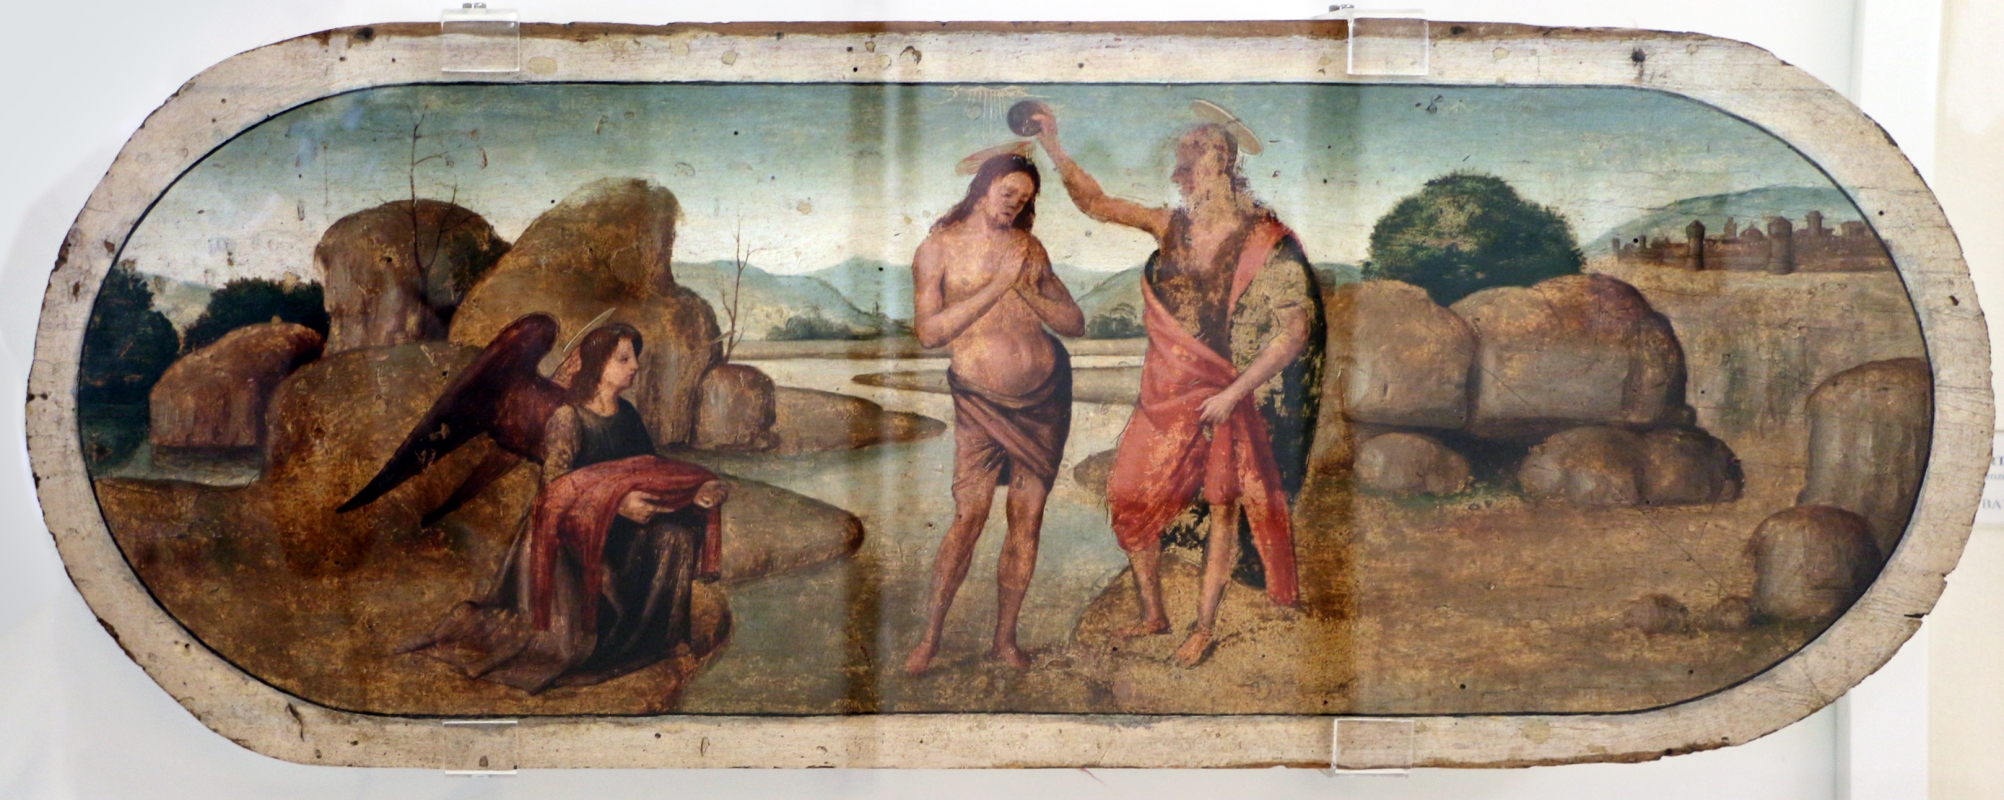 Bartolomeo di giovanni, battesimo di cristo, 1480-1500 ca - Sailko